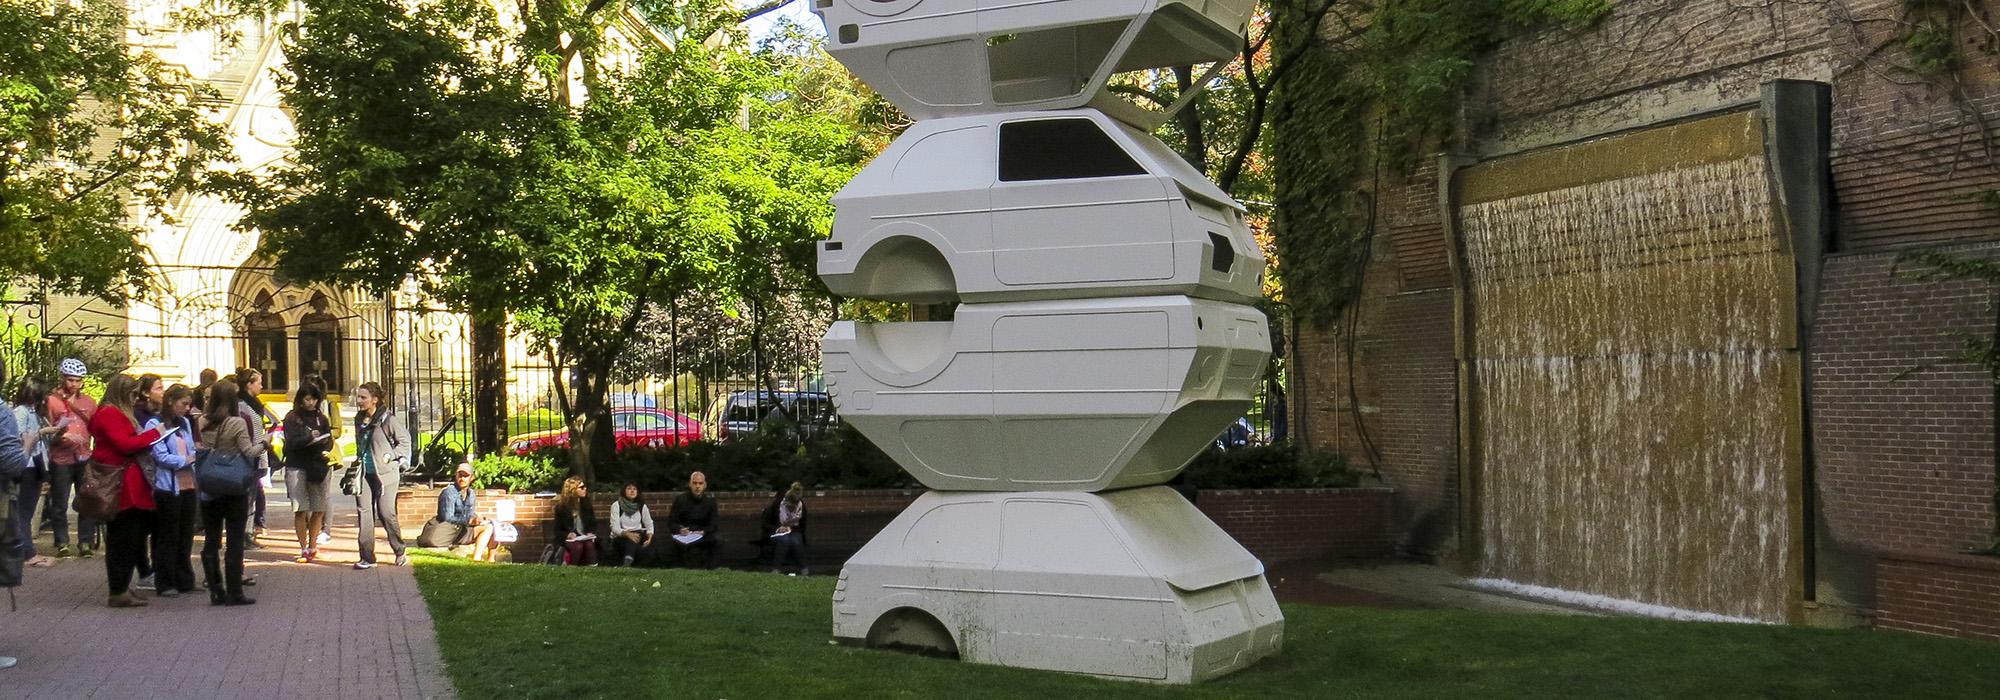 Toronto Sculpture Garden, Toronto, ON, Canada